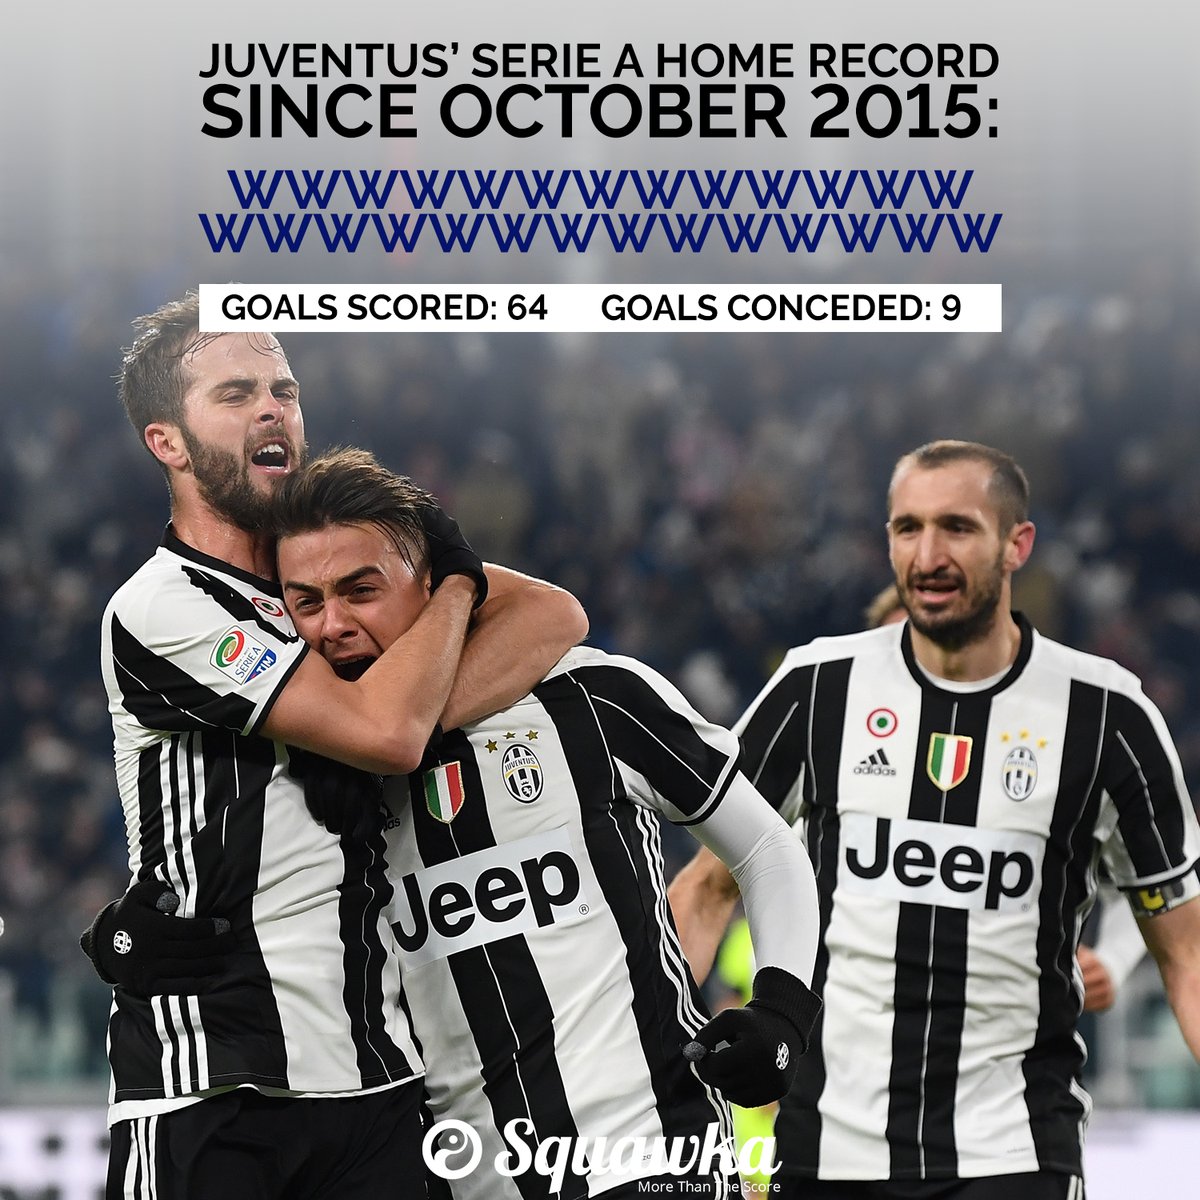 سجل انتصارات يوفنتوس على ملعبه فى الدوري الإيطالي منذ أكتوبر 2015